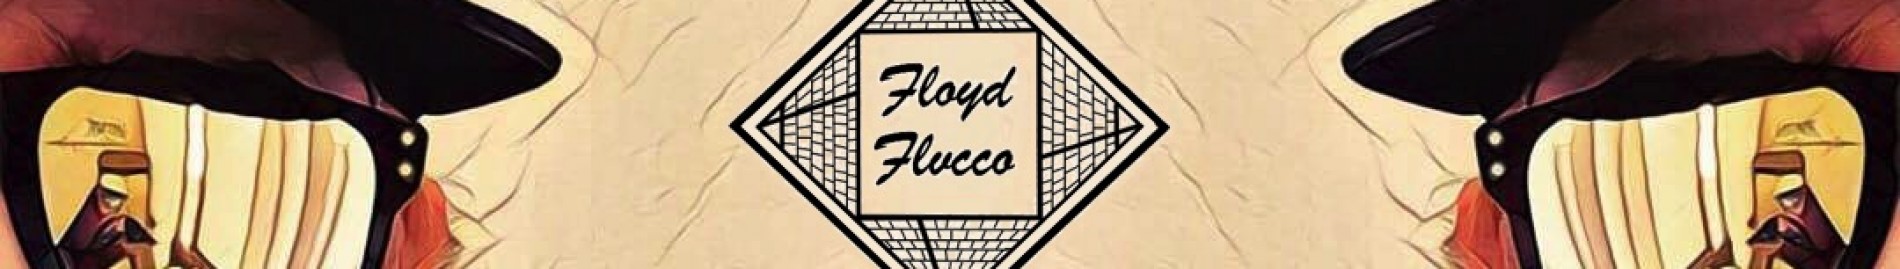 Floyd-Flvcco